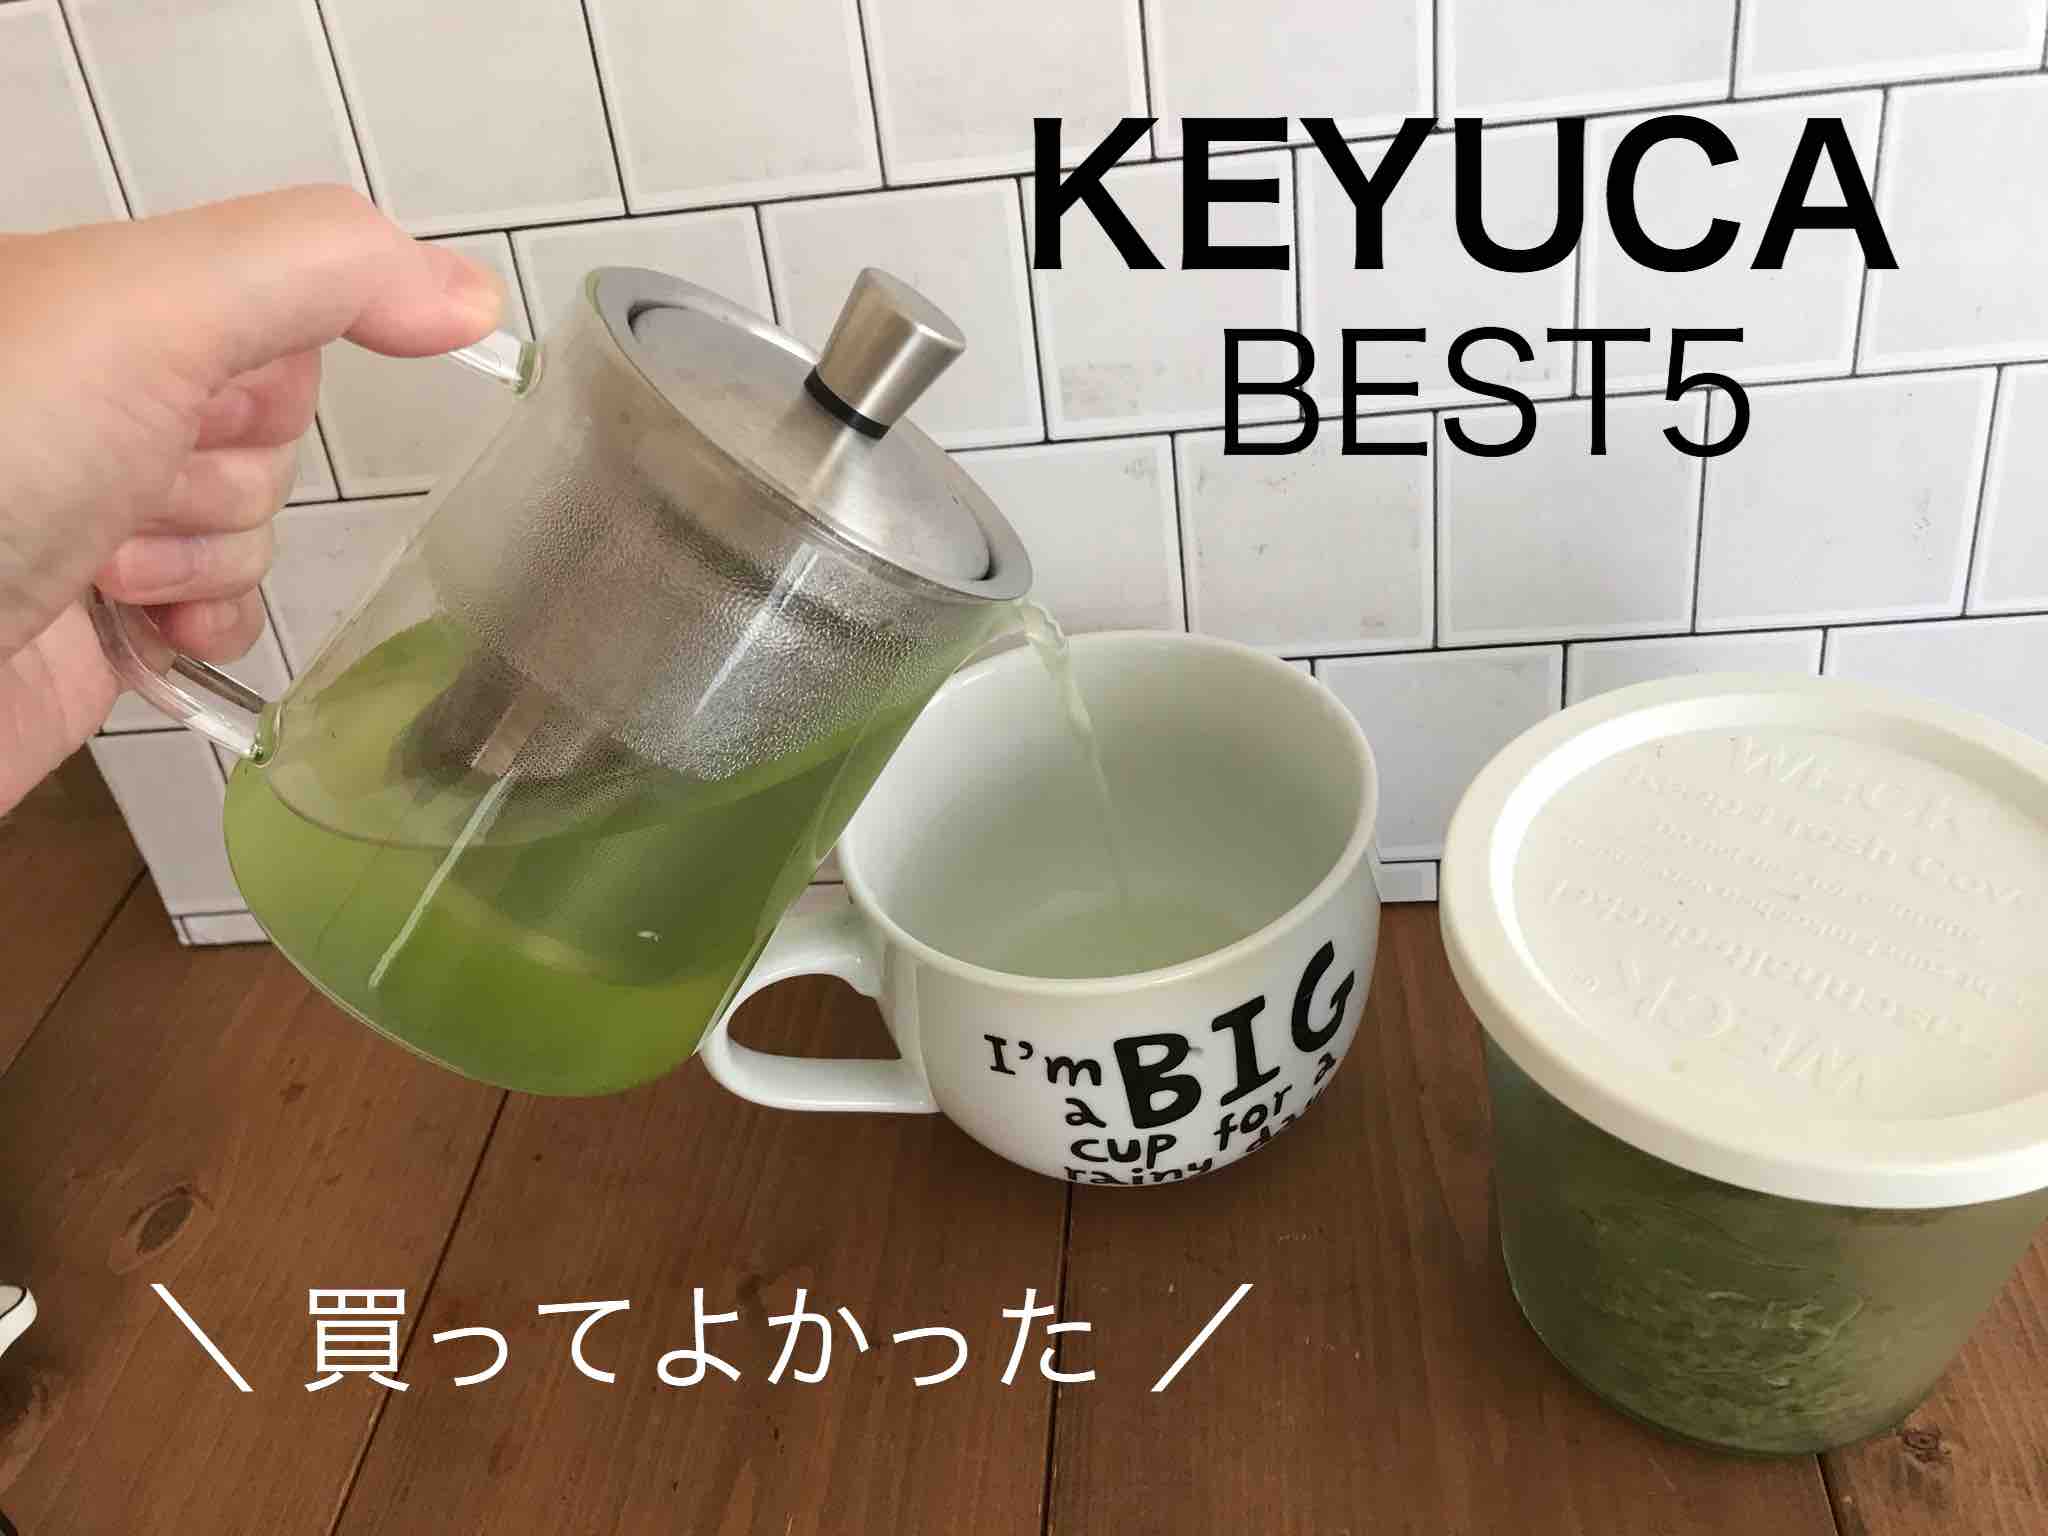 ケユカ(KEYUCA)で買って良かったものベスト7【おしゃれ雑貨】 | ワトコ ...